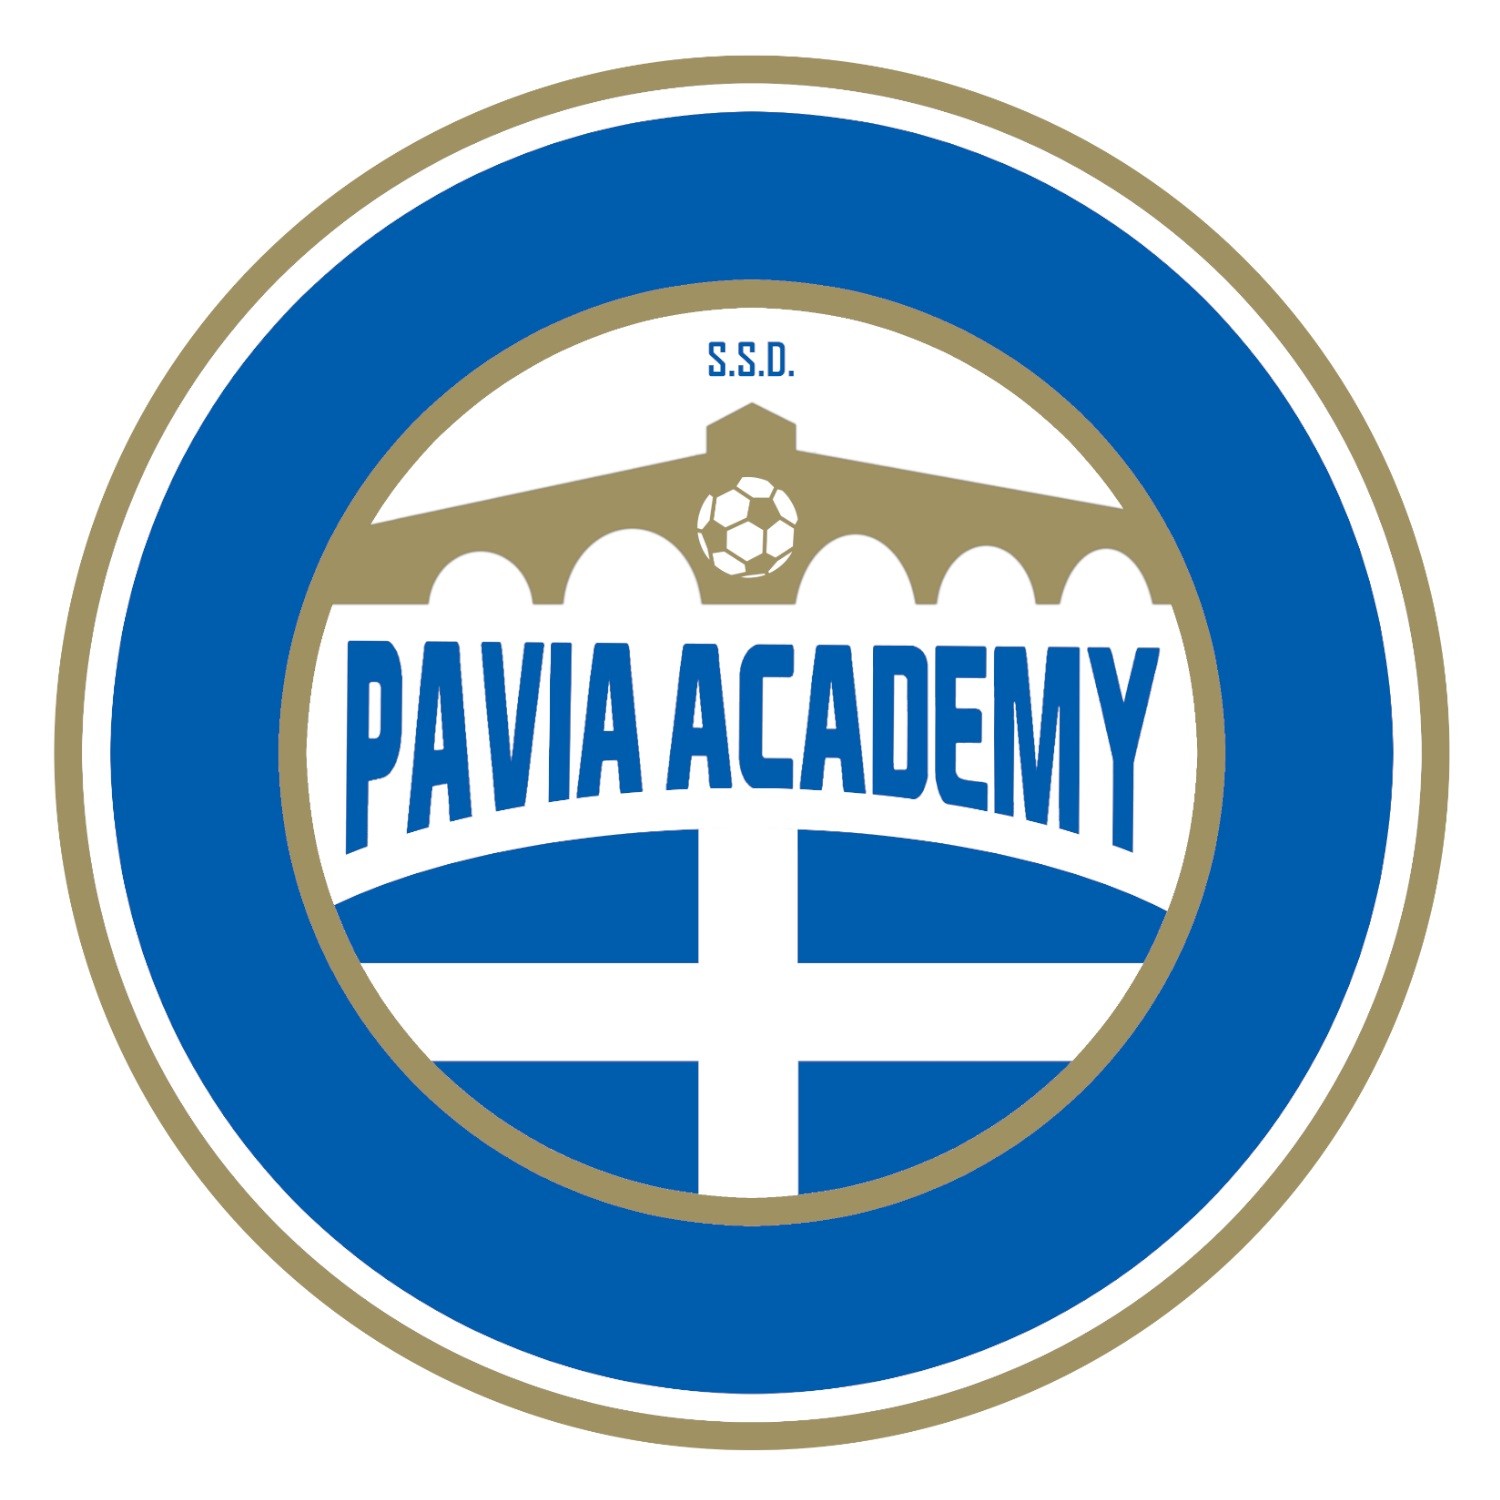 Pavia Academy SSD